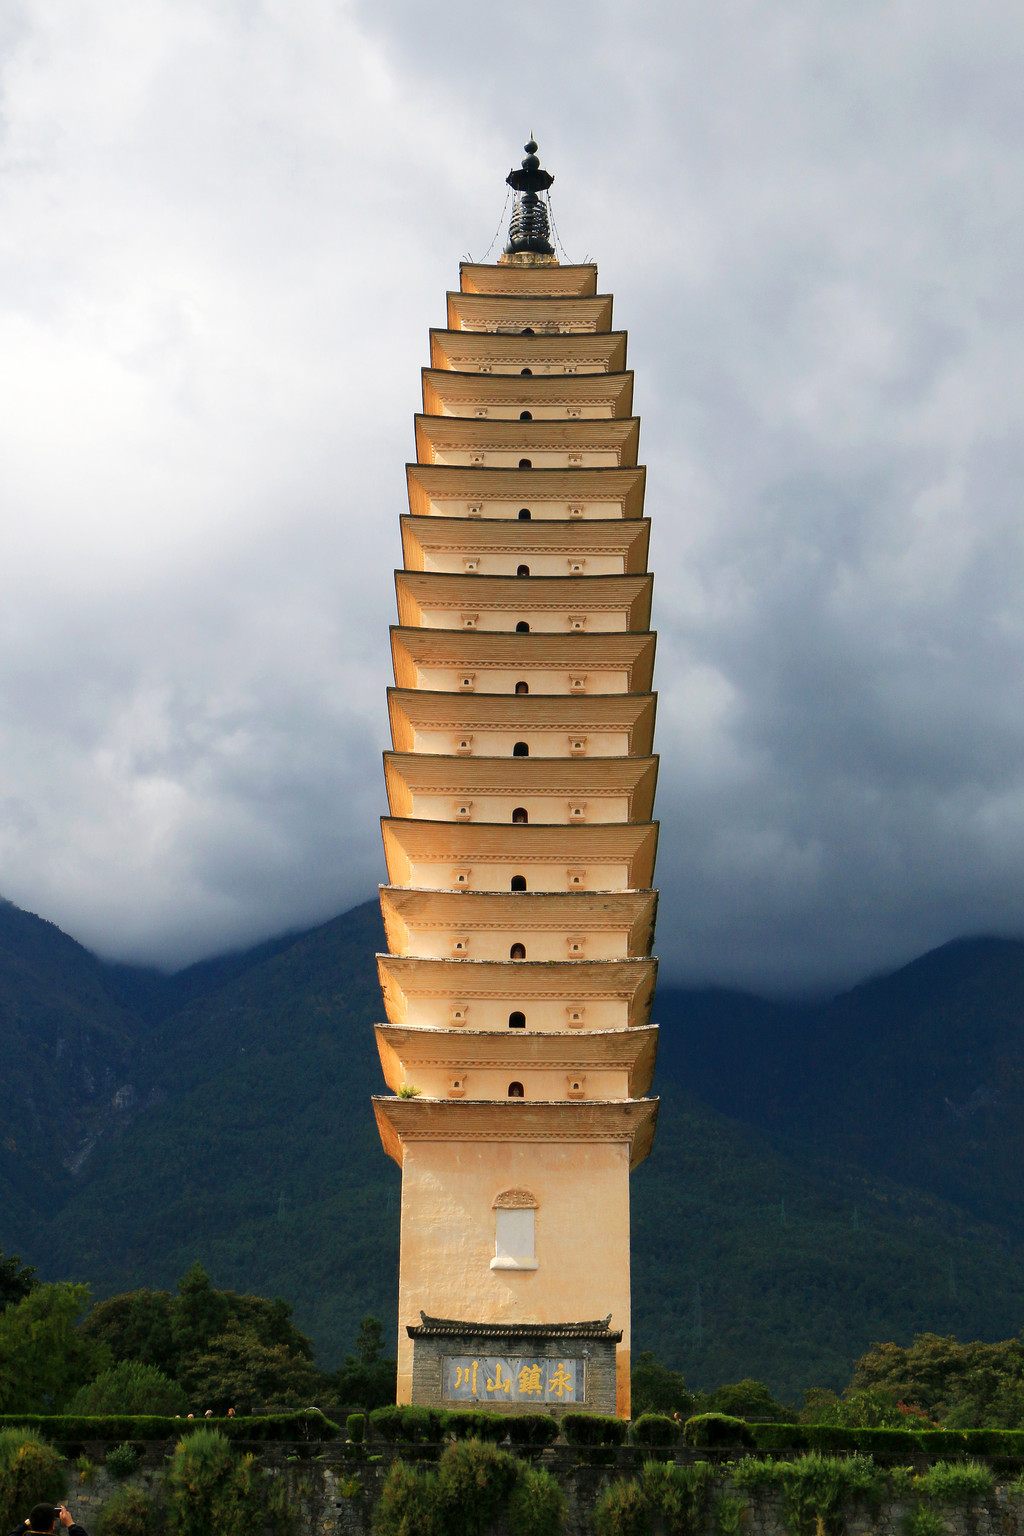 【携程攻略】大理崇圣寺三塔文化旅游区景点,大理的标志，一定得来啊，真的很美，在光的映照下，三塔呈现出奇妙的…